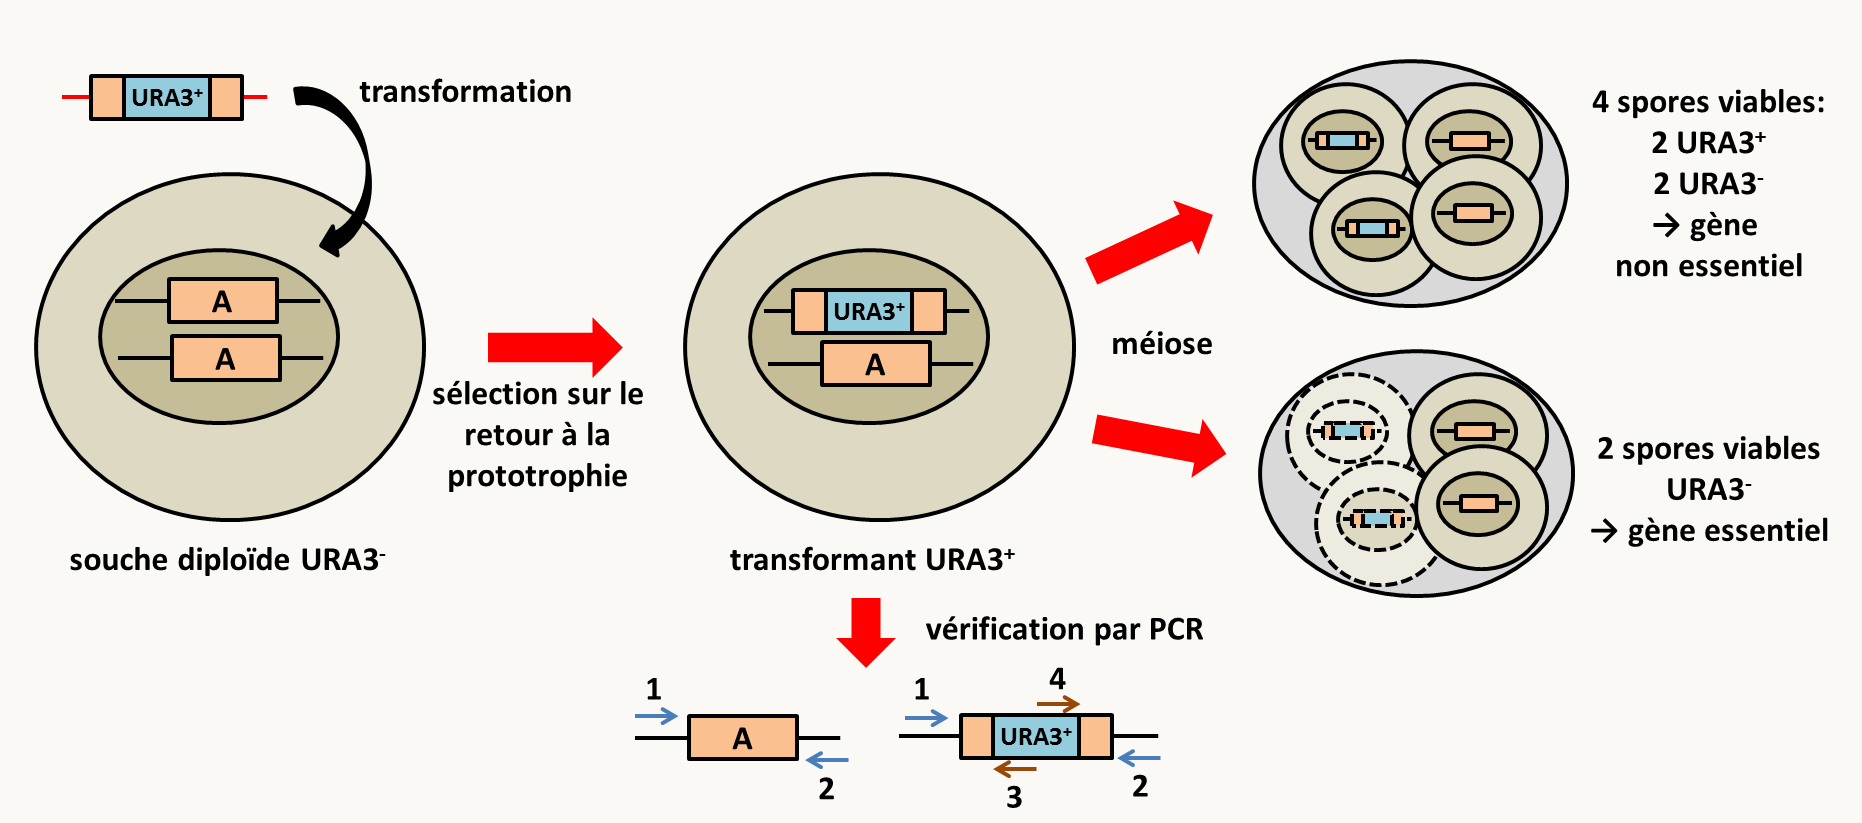 remplacement de gènes chez Saccharomyces cerevisiae en utilisant le marqueur d'auxotrophie à l'uracile URA3. Il est possible de faire le remplacement directement sur une souche haploïde mais si le gène est essentiel, aucun mutant ne sera obtenu. Il est donc conseillé comme sur le schéma de transformer avec la cassette de remplacement une souche diploïde. Dans ce cas, une seule des deux copies est remplacée car le remplacement simultané des deux copies est extrêmement rare. Les transformants sont sélectionnés sur leur retour à la prototrophie alors que la souche de départ est auxotrophe pour l'uracile. L'efficacité du remplacement est telle que seule une vérification par PCR est nécessaire pour s'assurer que le remplacement a bien été fait. Pour ceci, il faut utiliser des amorces situées à l'extérieur de la région d'homologie utilisée pour faire le remplacement (amorces 1 et 2). Seuls les transformants ayant un remplacement correct donneront des bandes de tailles connues en utilisant les couples d'amorces 1+3 et 2+4. Une méiose permet d'obtenir des tétrades. Si les 4 ascospores sont viables alors le gène n'est pas essentiel. Si seulement les deux spores URA3<sup>-</sup> sont viables alors le gène est essentiel. Chez les champignons filamenteux, il est recommandé de vérifier la délétion par Southern blot car il existe des évènements d'insertion complexes ou l'allèle remplacé et l'allèle sauvage sont tous les deux présents. De même, la plupart étant essentiellement haploïdes, l'obtention de remplacement de gènes essentiels est plus difficile mais pas impossible.